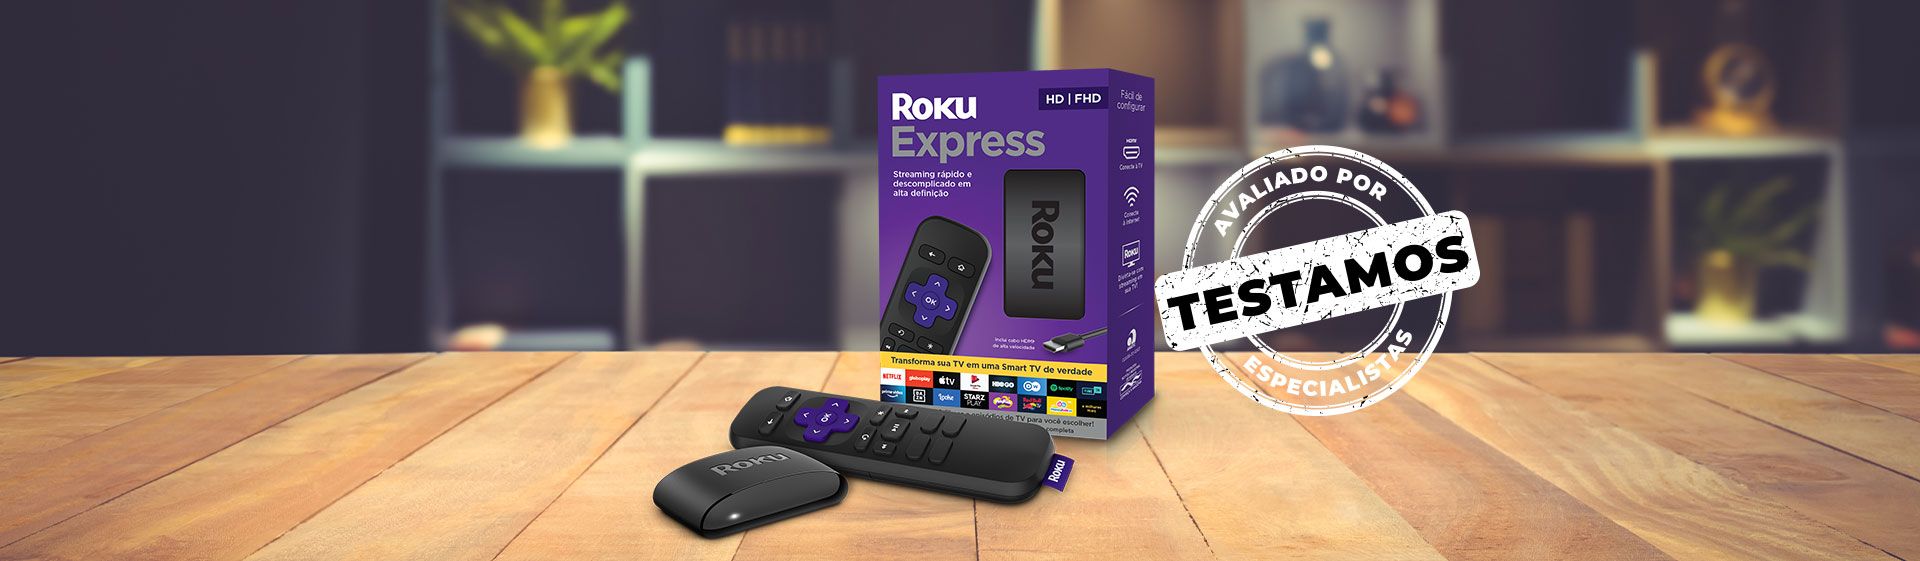 Roku Express ao lado do controle remoto e da caixa do aparelho, com selo "Avaliado por Especialistas" carimbado na imagem.